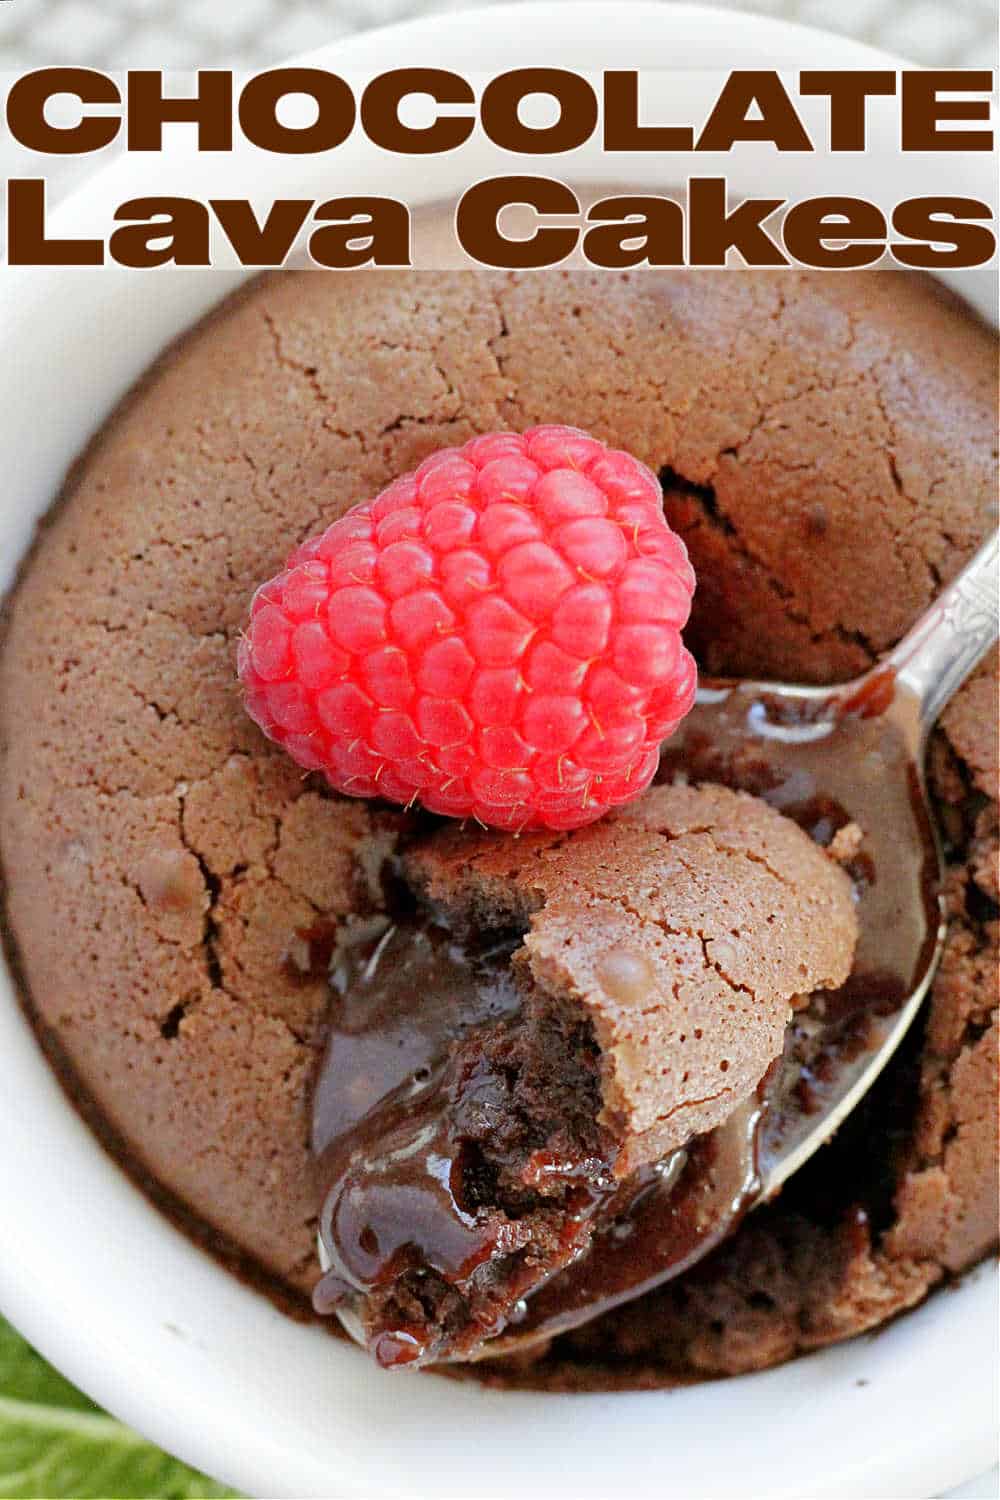 Molten Chocolate Lava Cakes | Foodtastic Mom #cakerecipes #chocolatecake #lavacakes #chocolatelavacakes via @foodtasticmom